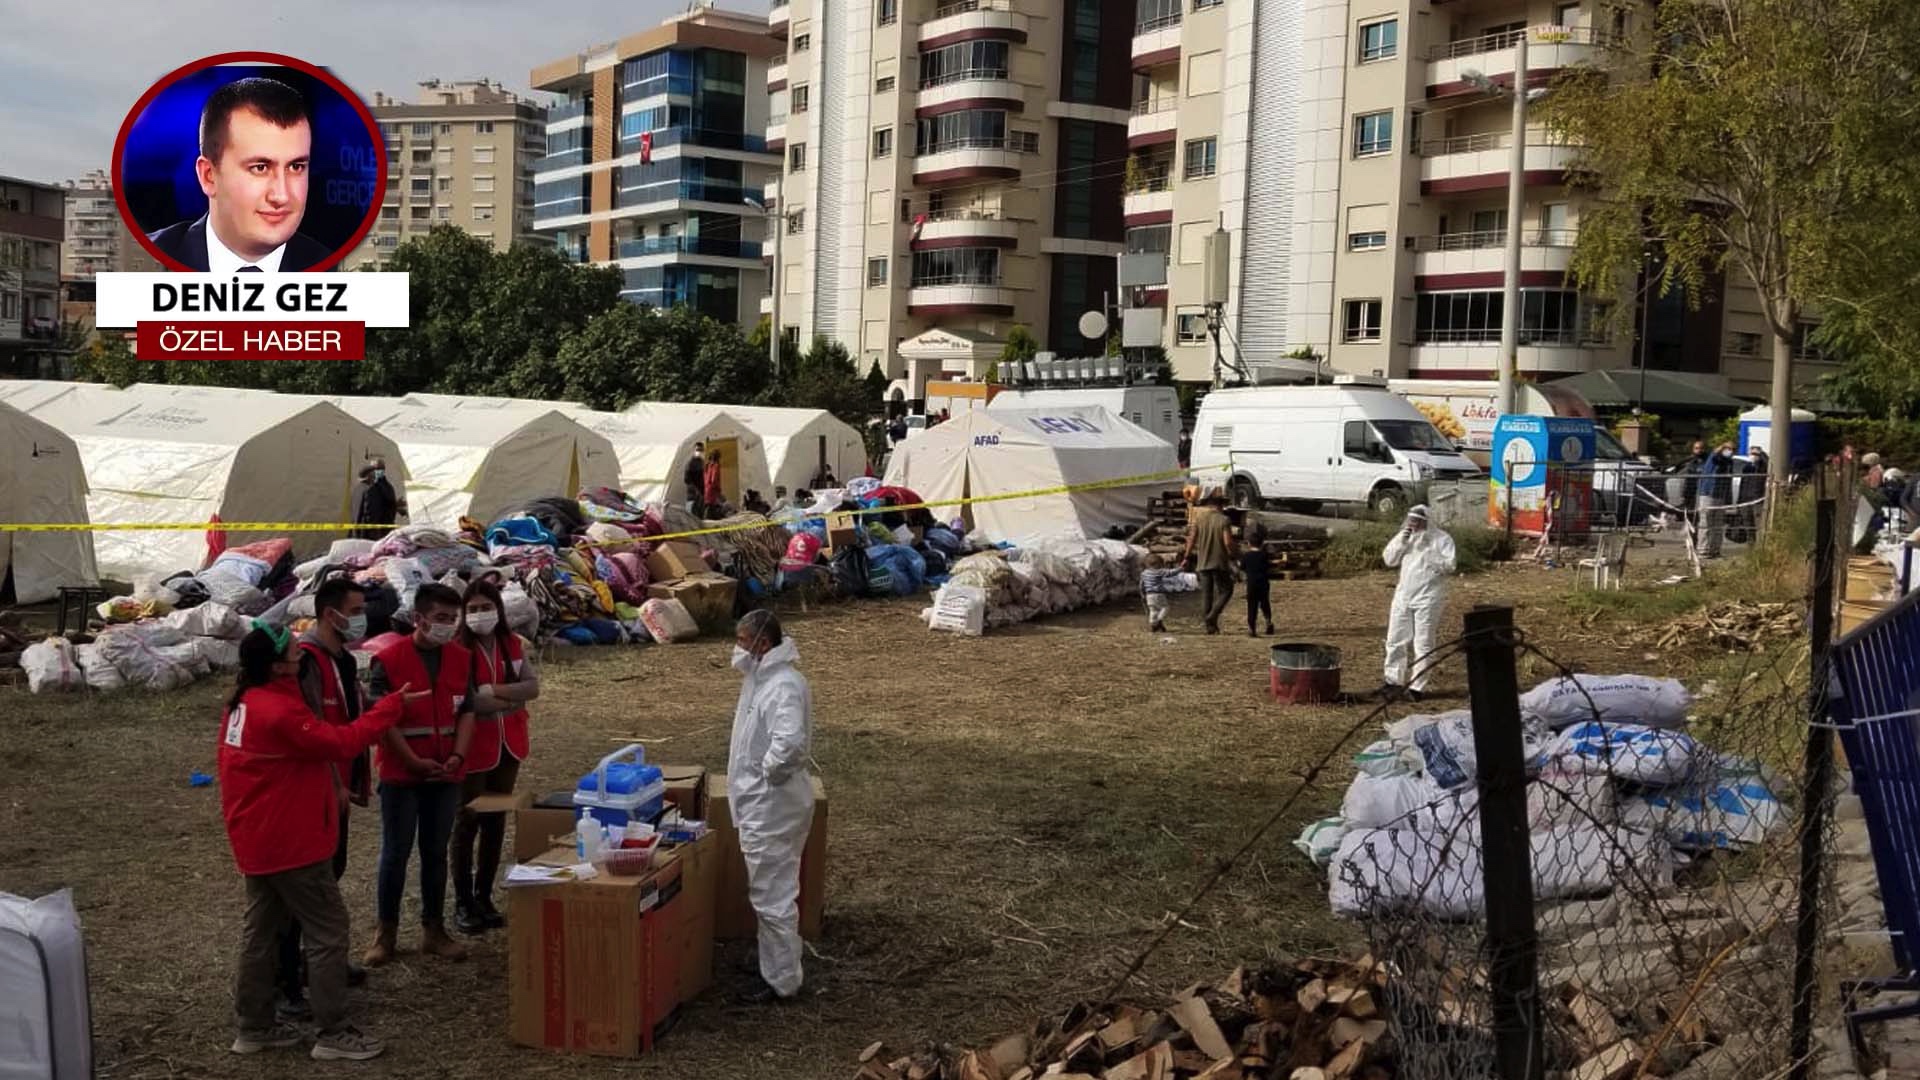 İzmir’de çadırkentte korona şüphesi: Test yapılmadı